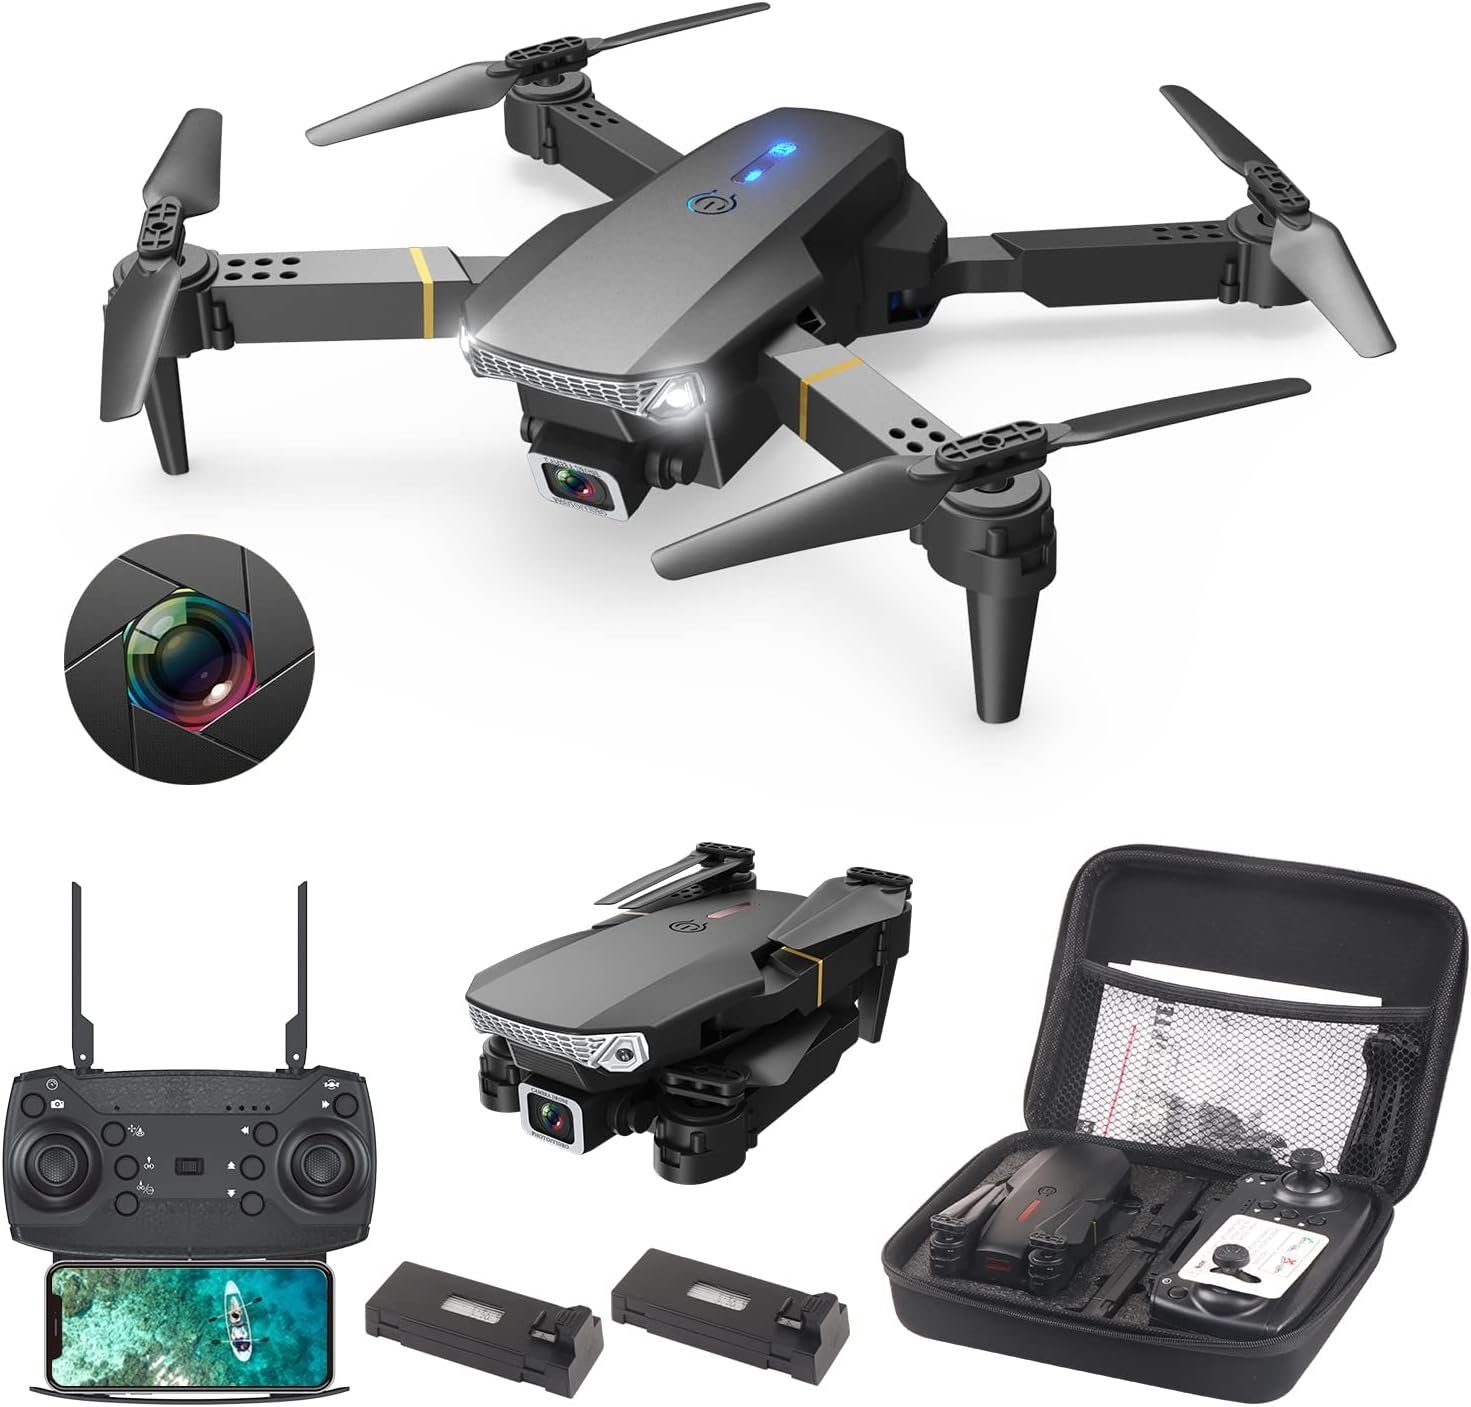 Wipkviey Drohne (Drohne mit Kamera, Faltbar, FPV, 2 Batterien, Gravity Control)